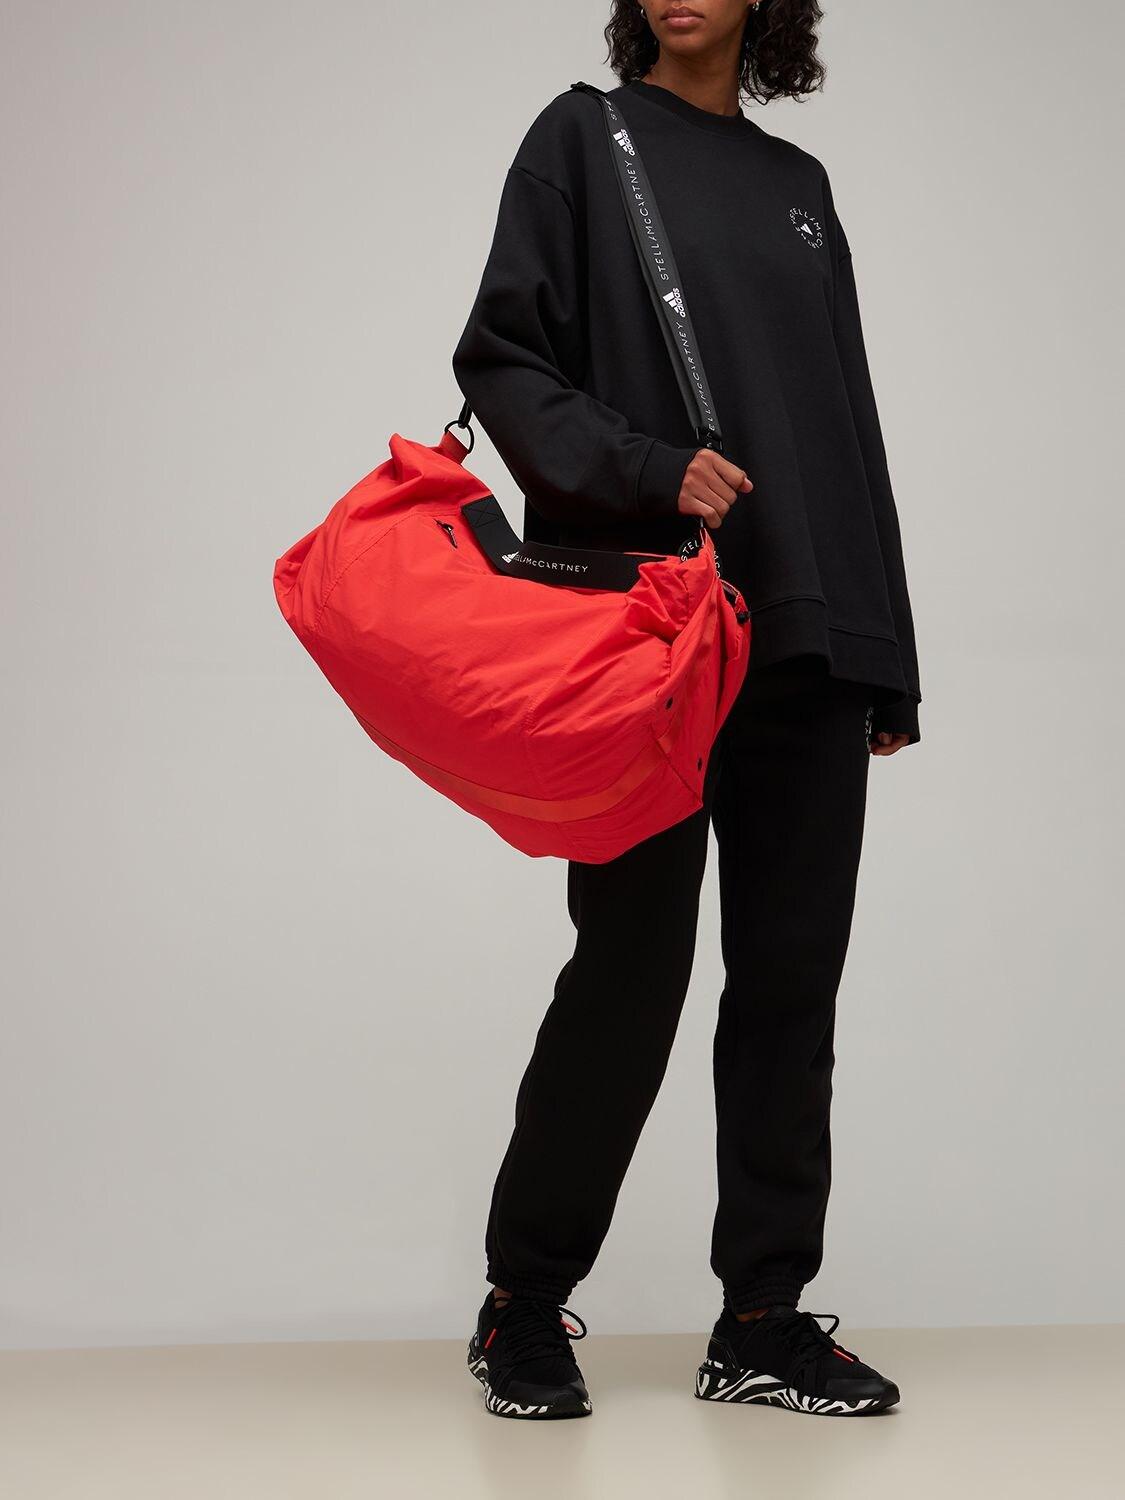 Rook Uitgang genoeg adidas By Stella McCartney Asmc Studio Duffle Bag in Red | Lyst